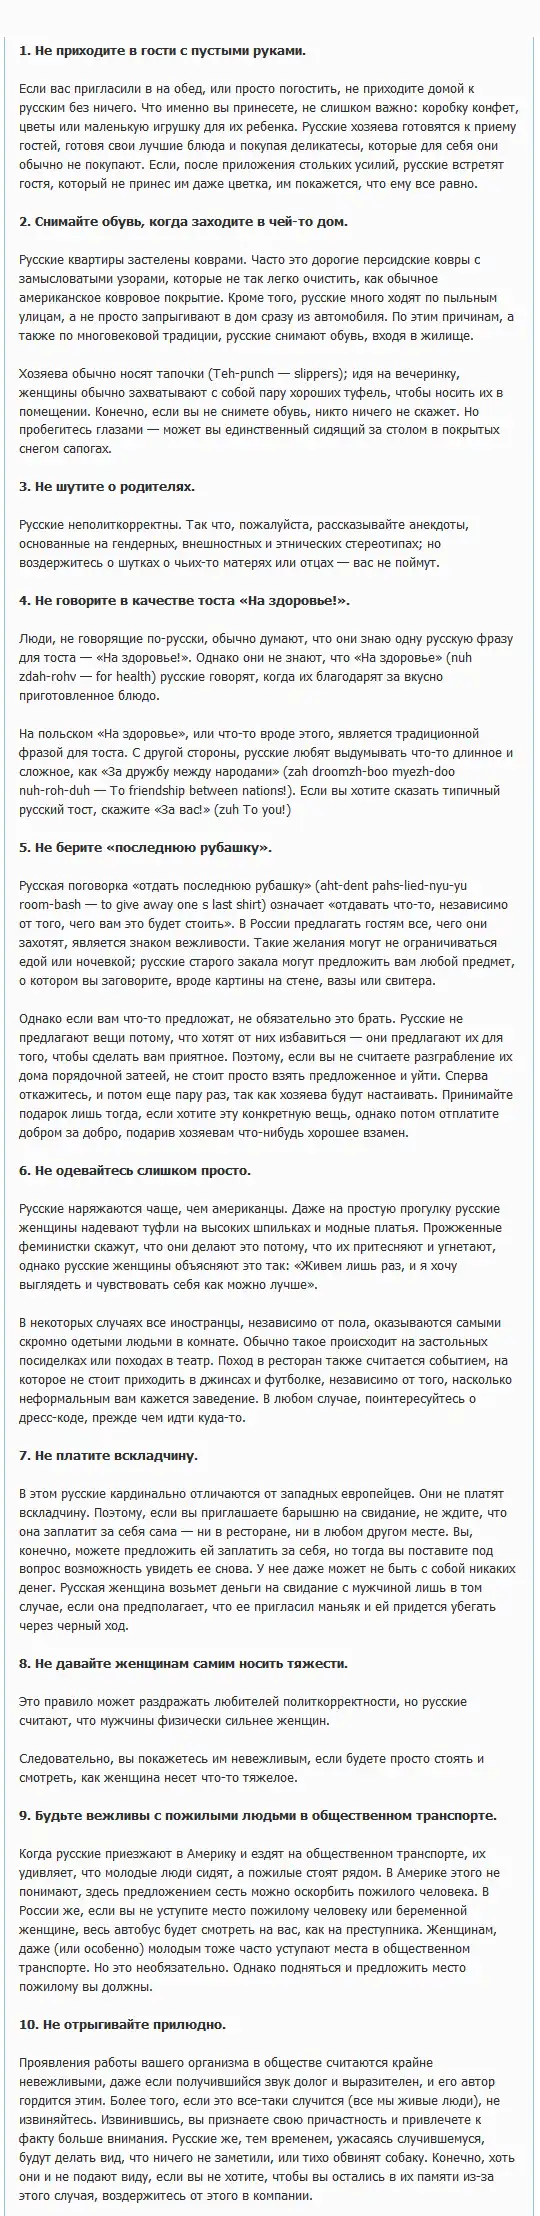 Инструкция о России для иностранных гостей